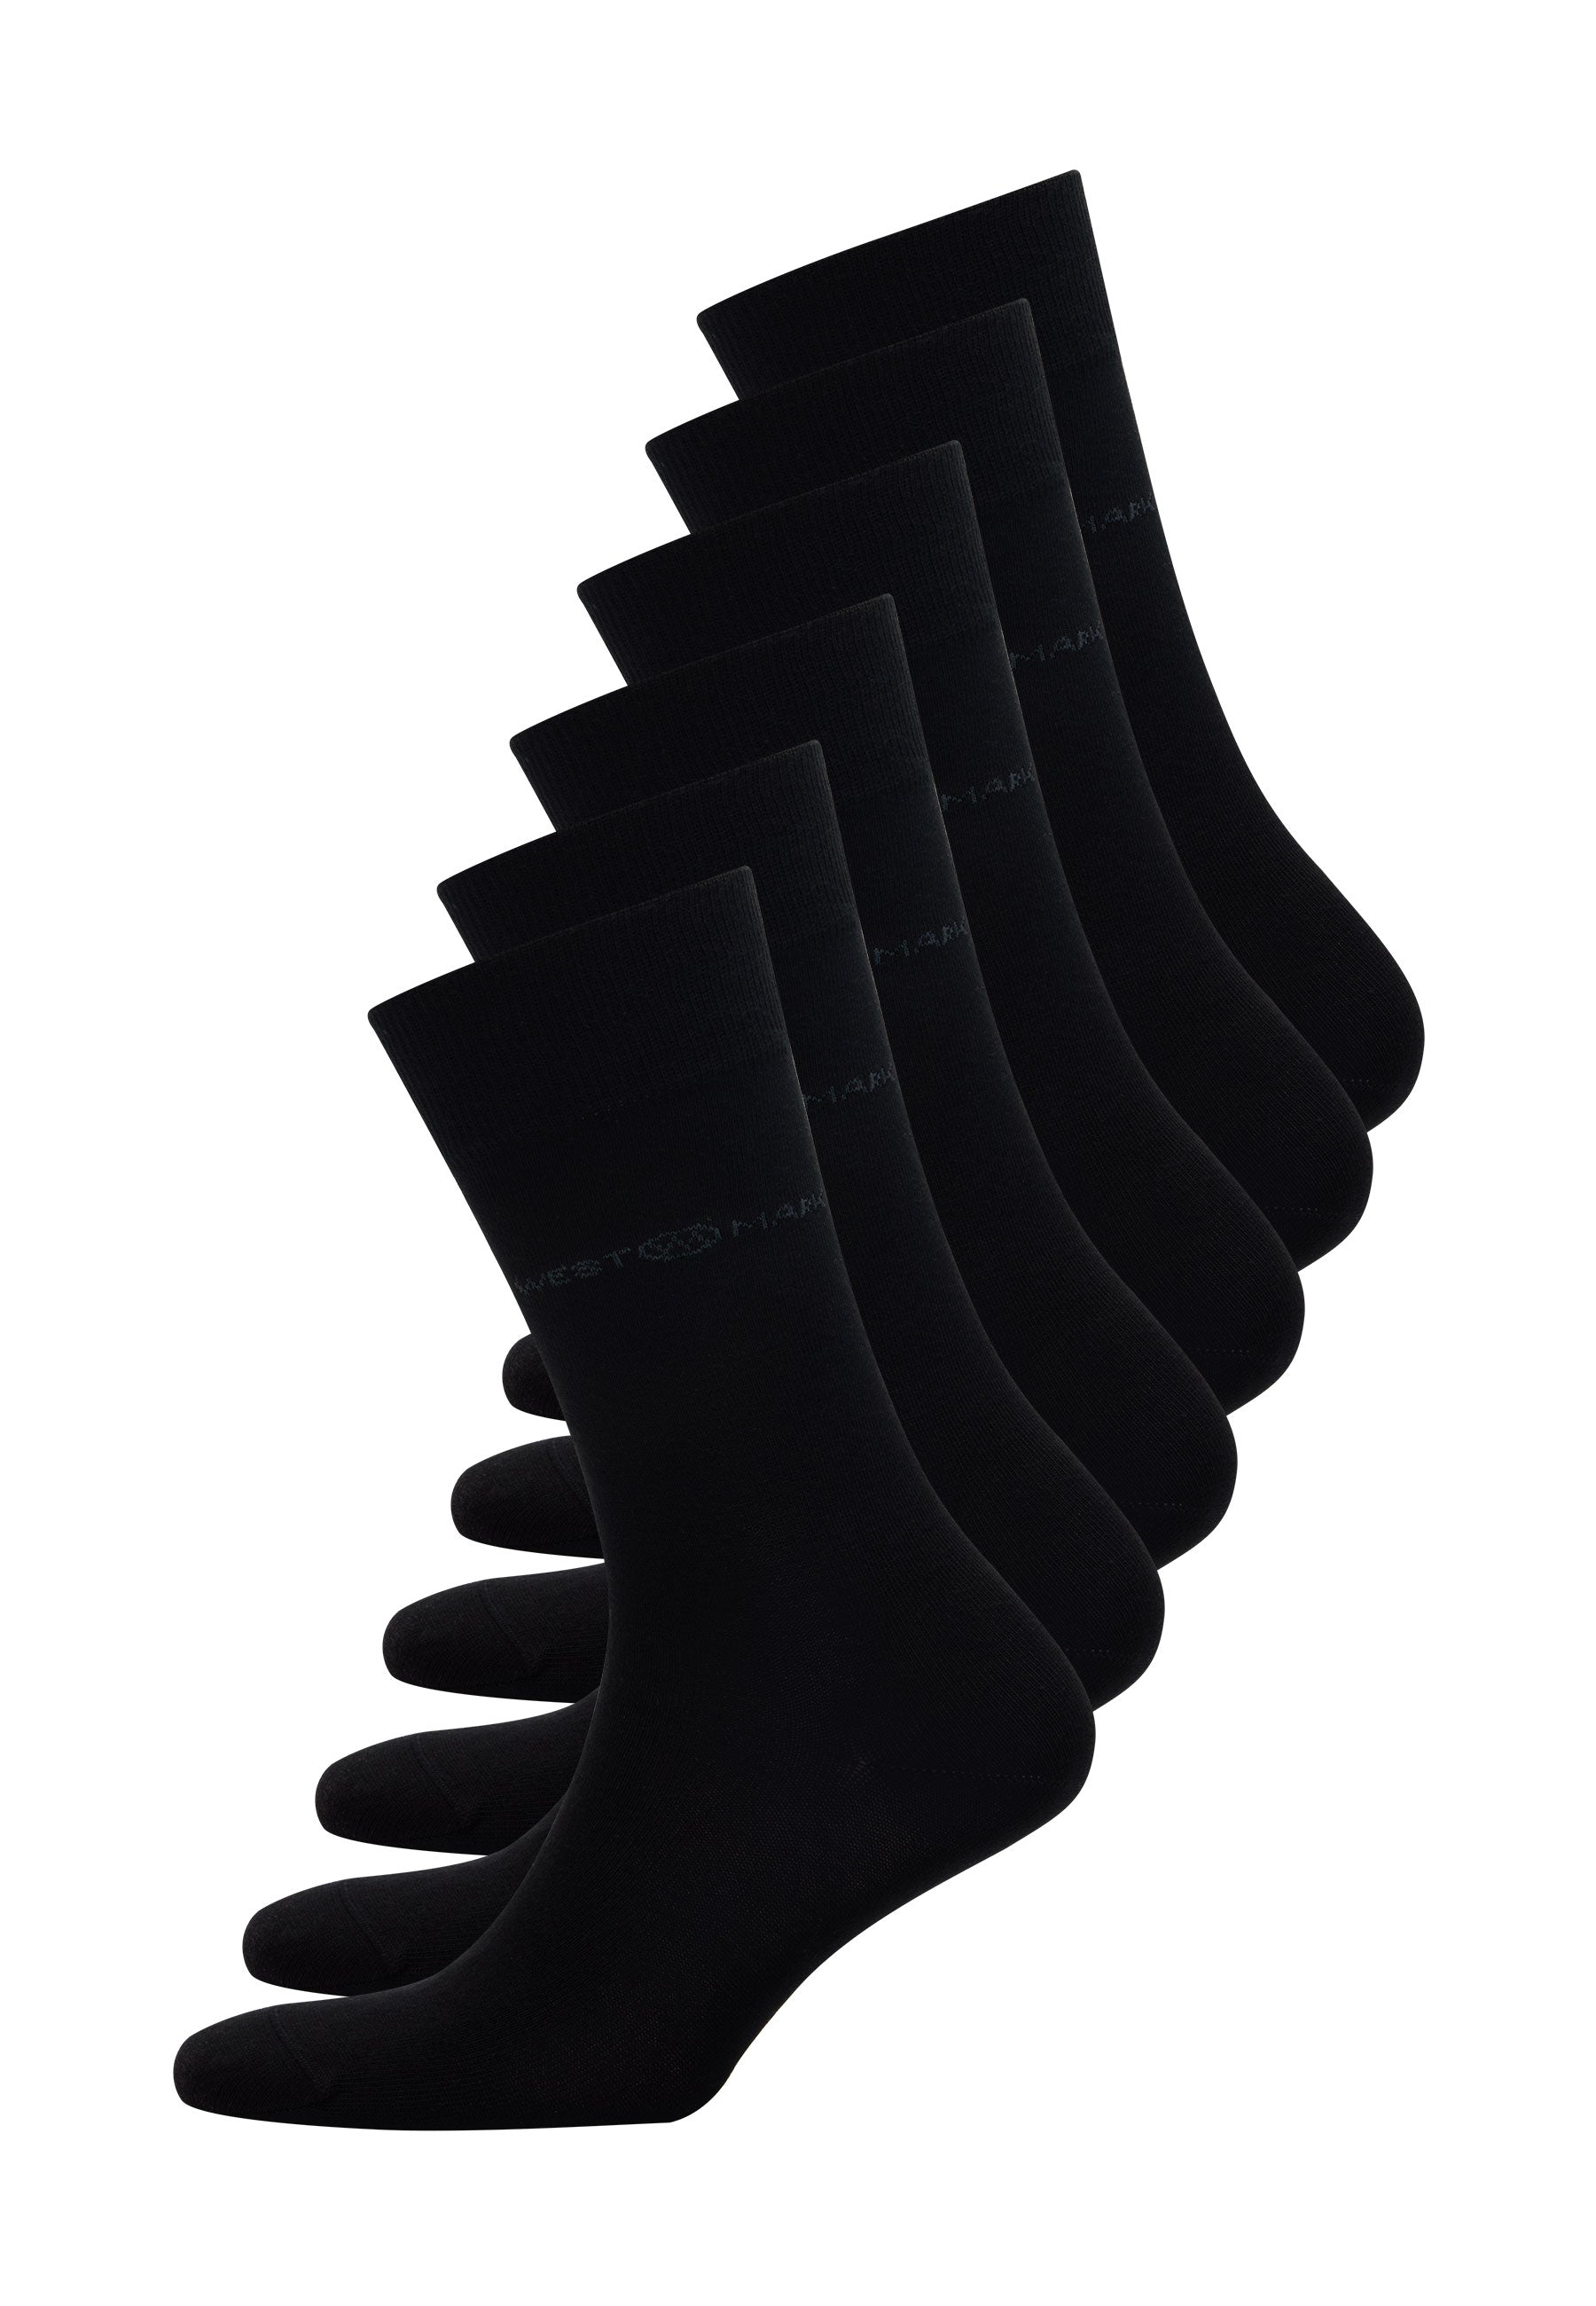 6’lı Siyah Pamuk Karışımlı Klasik Erkek Çorap Seti CLASSIC BUSINESS - Socks - Westmark London EU(TR) Store Organik Pamuklu Sürdürülebilir Moda